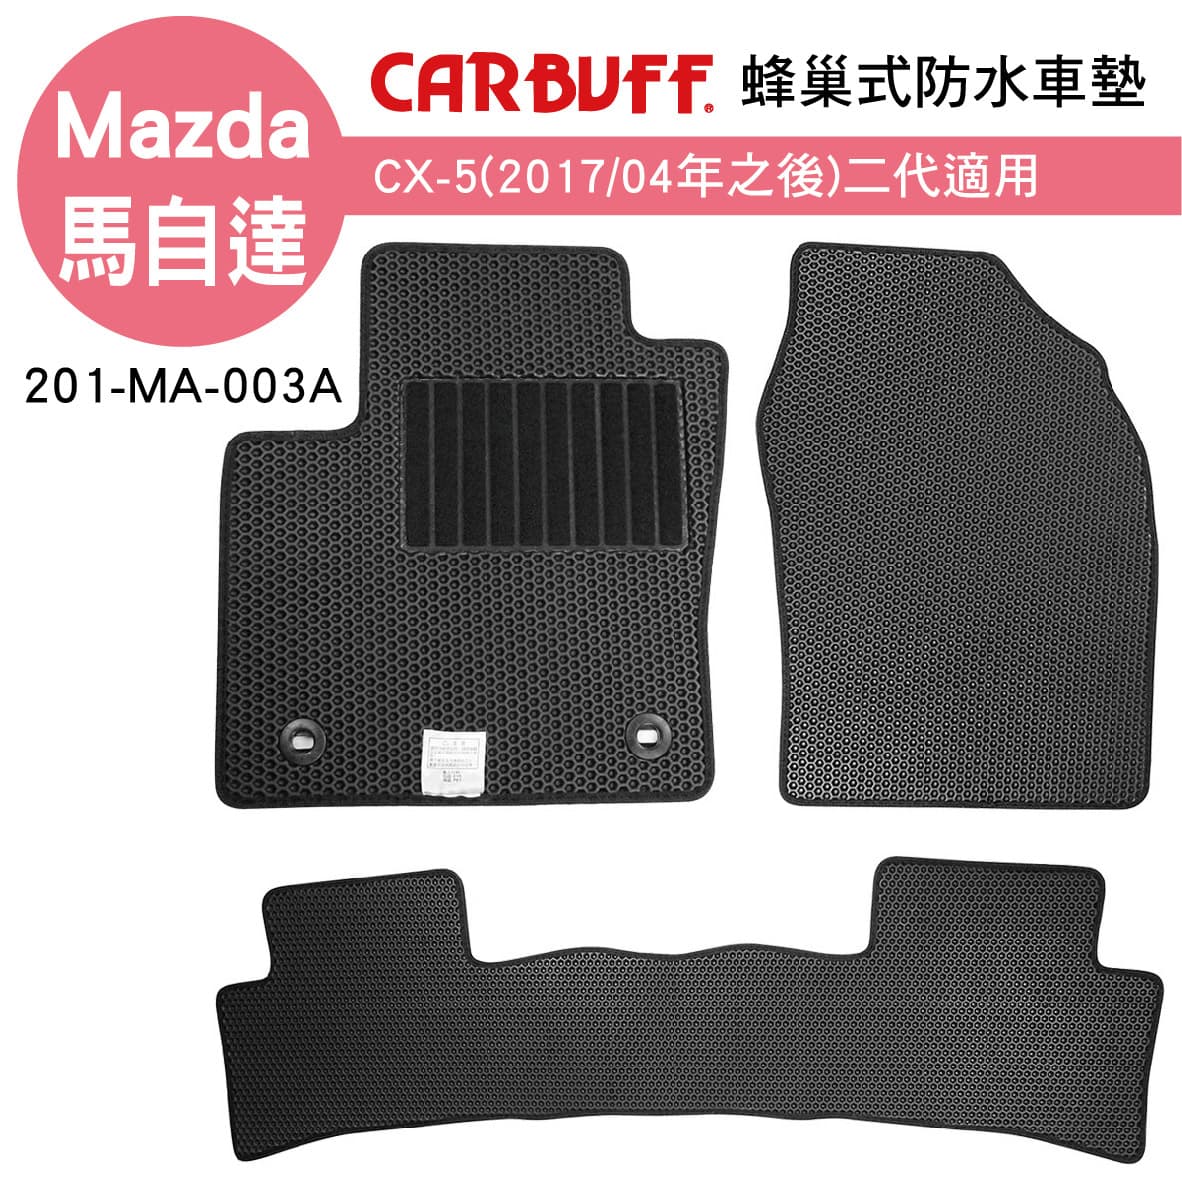 真便宜 [預購]CARBUFF 蜂巢式防水車墊 Mazda CX-5(2017/04~)二代適用